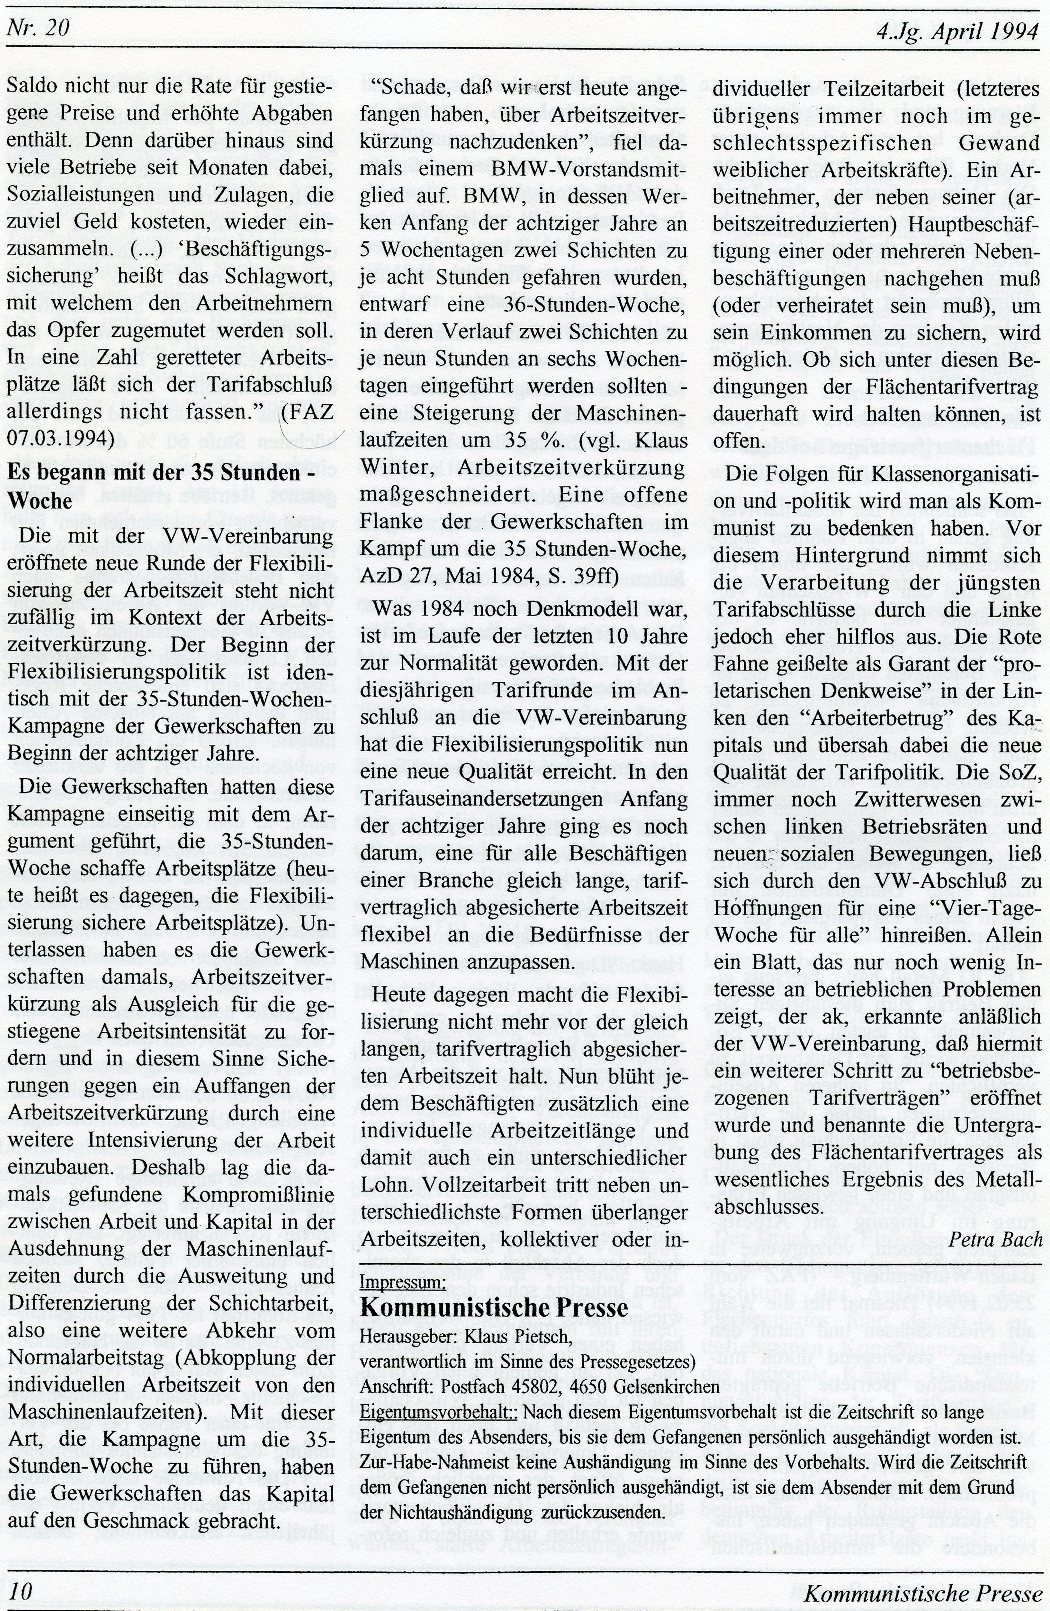 Gelsenkirchen_Kommunistische_Presse_1994_20_010